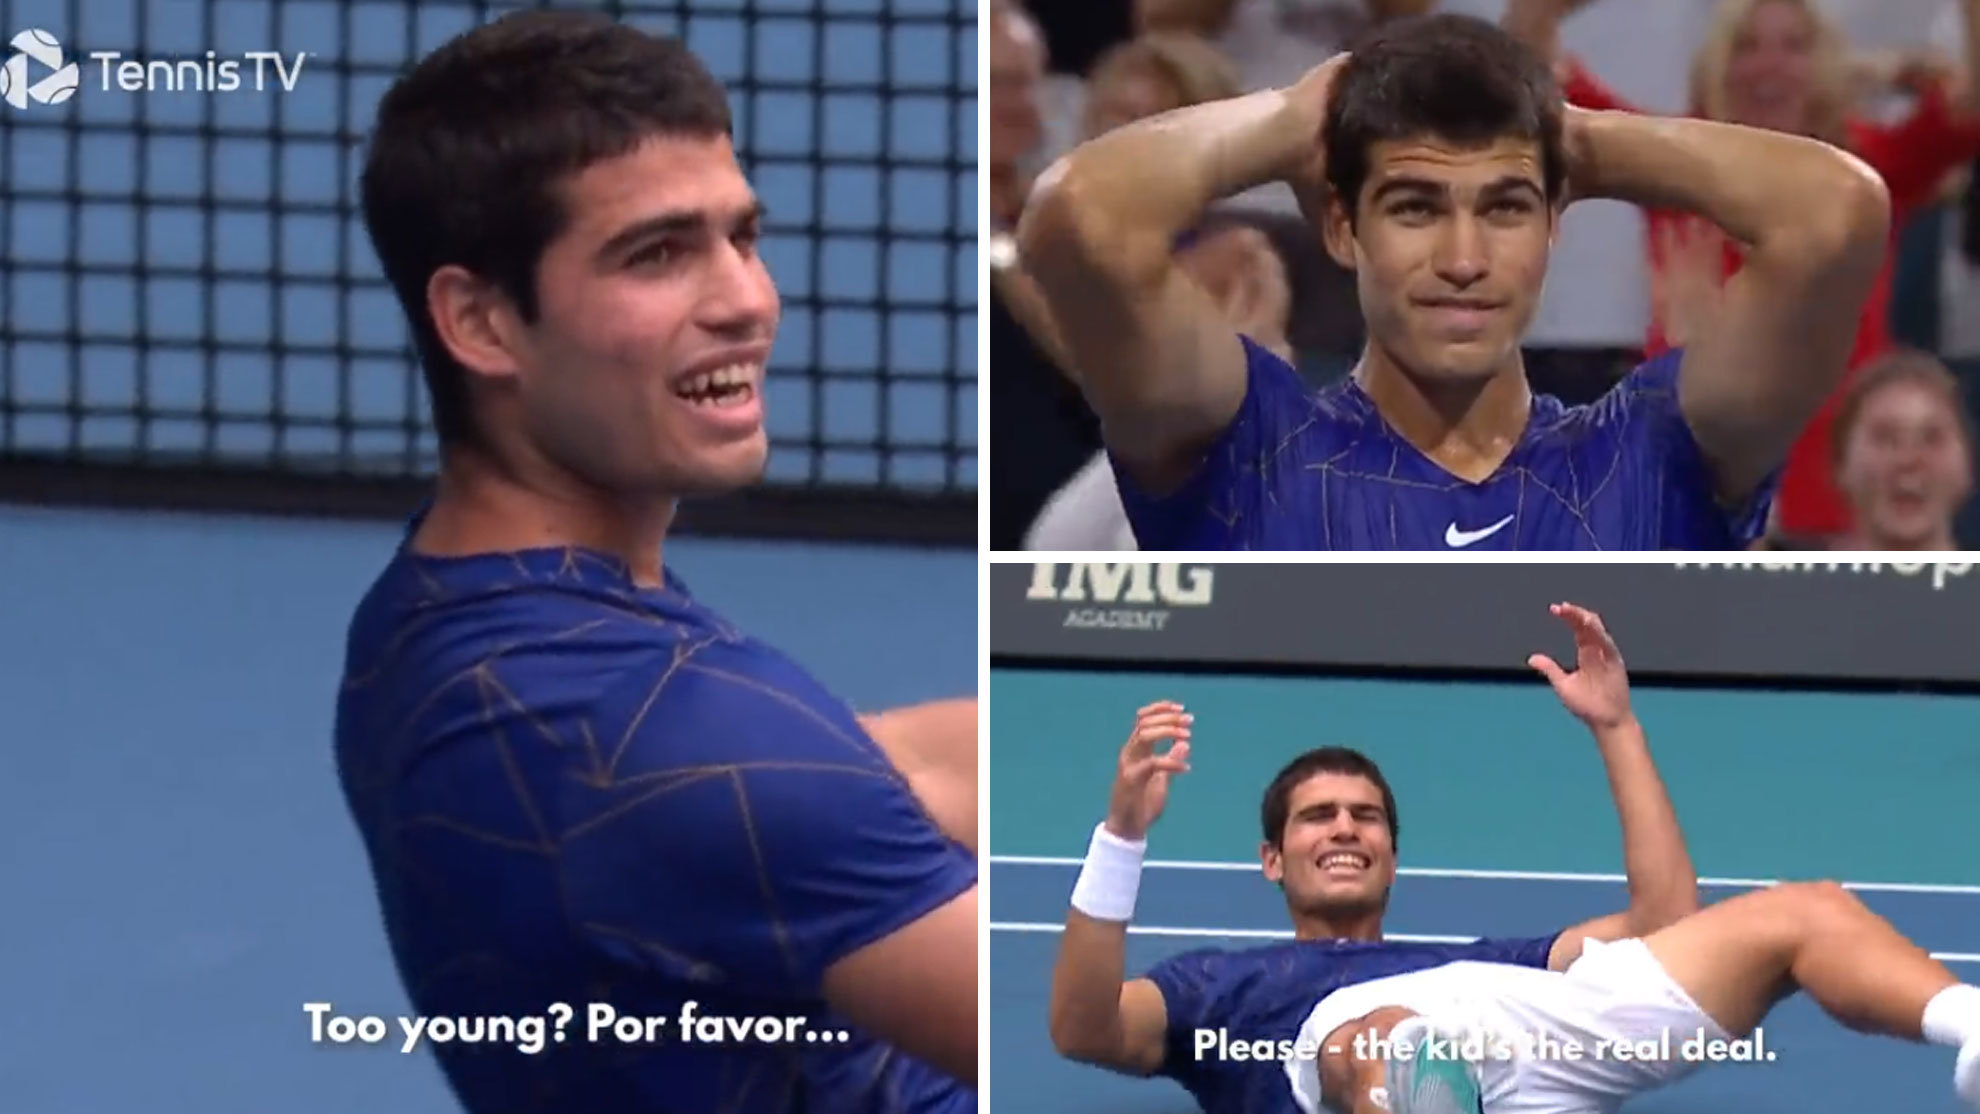 La ATP homenajea a Carlos Alcaraz con este vídeo: "¿Demasiado joven? ¡Por favor!"